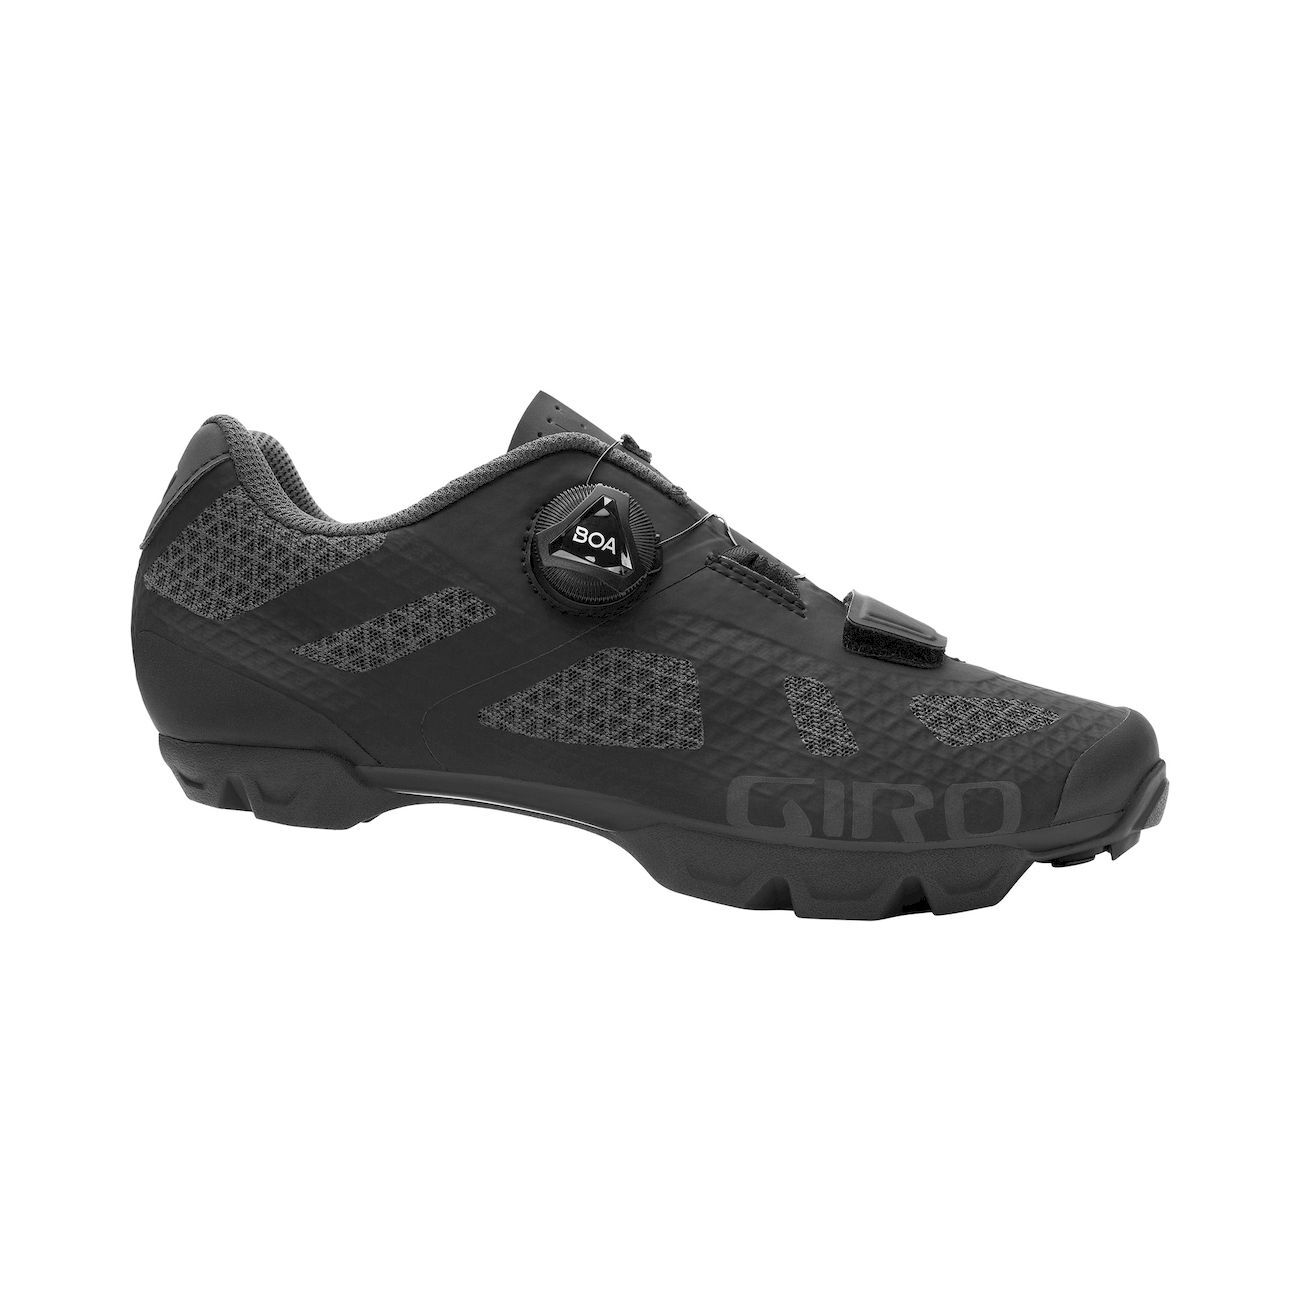 Giro Rincon - Mountain Bike shoes - Women's